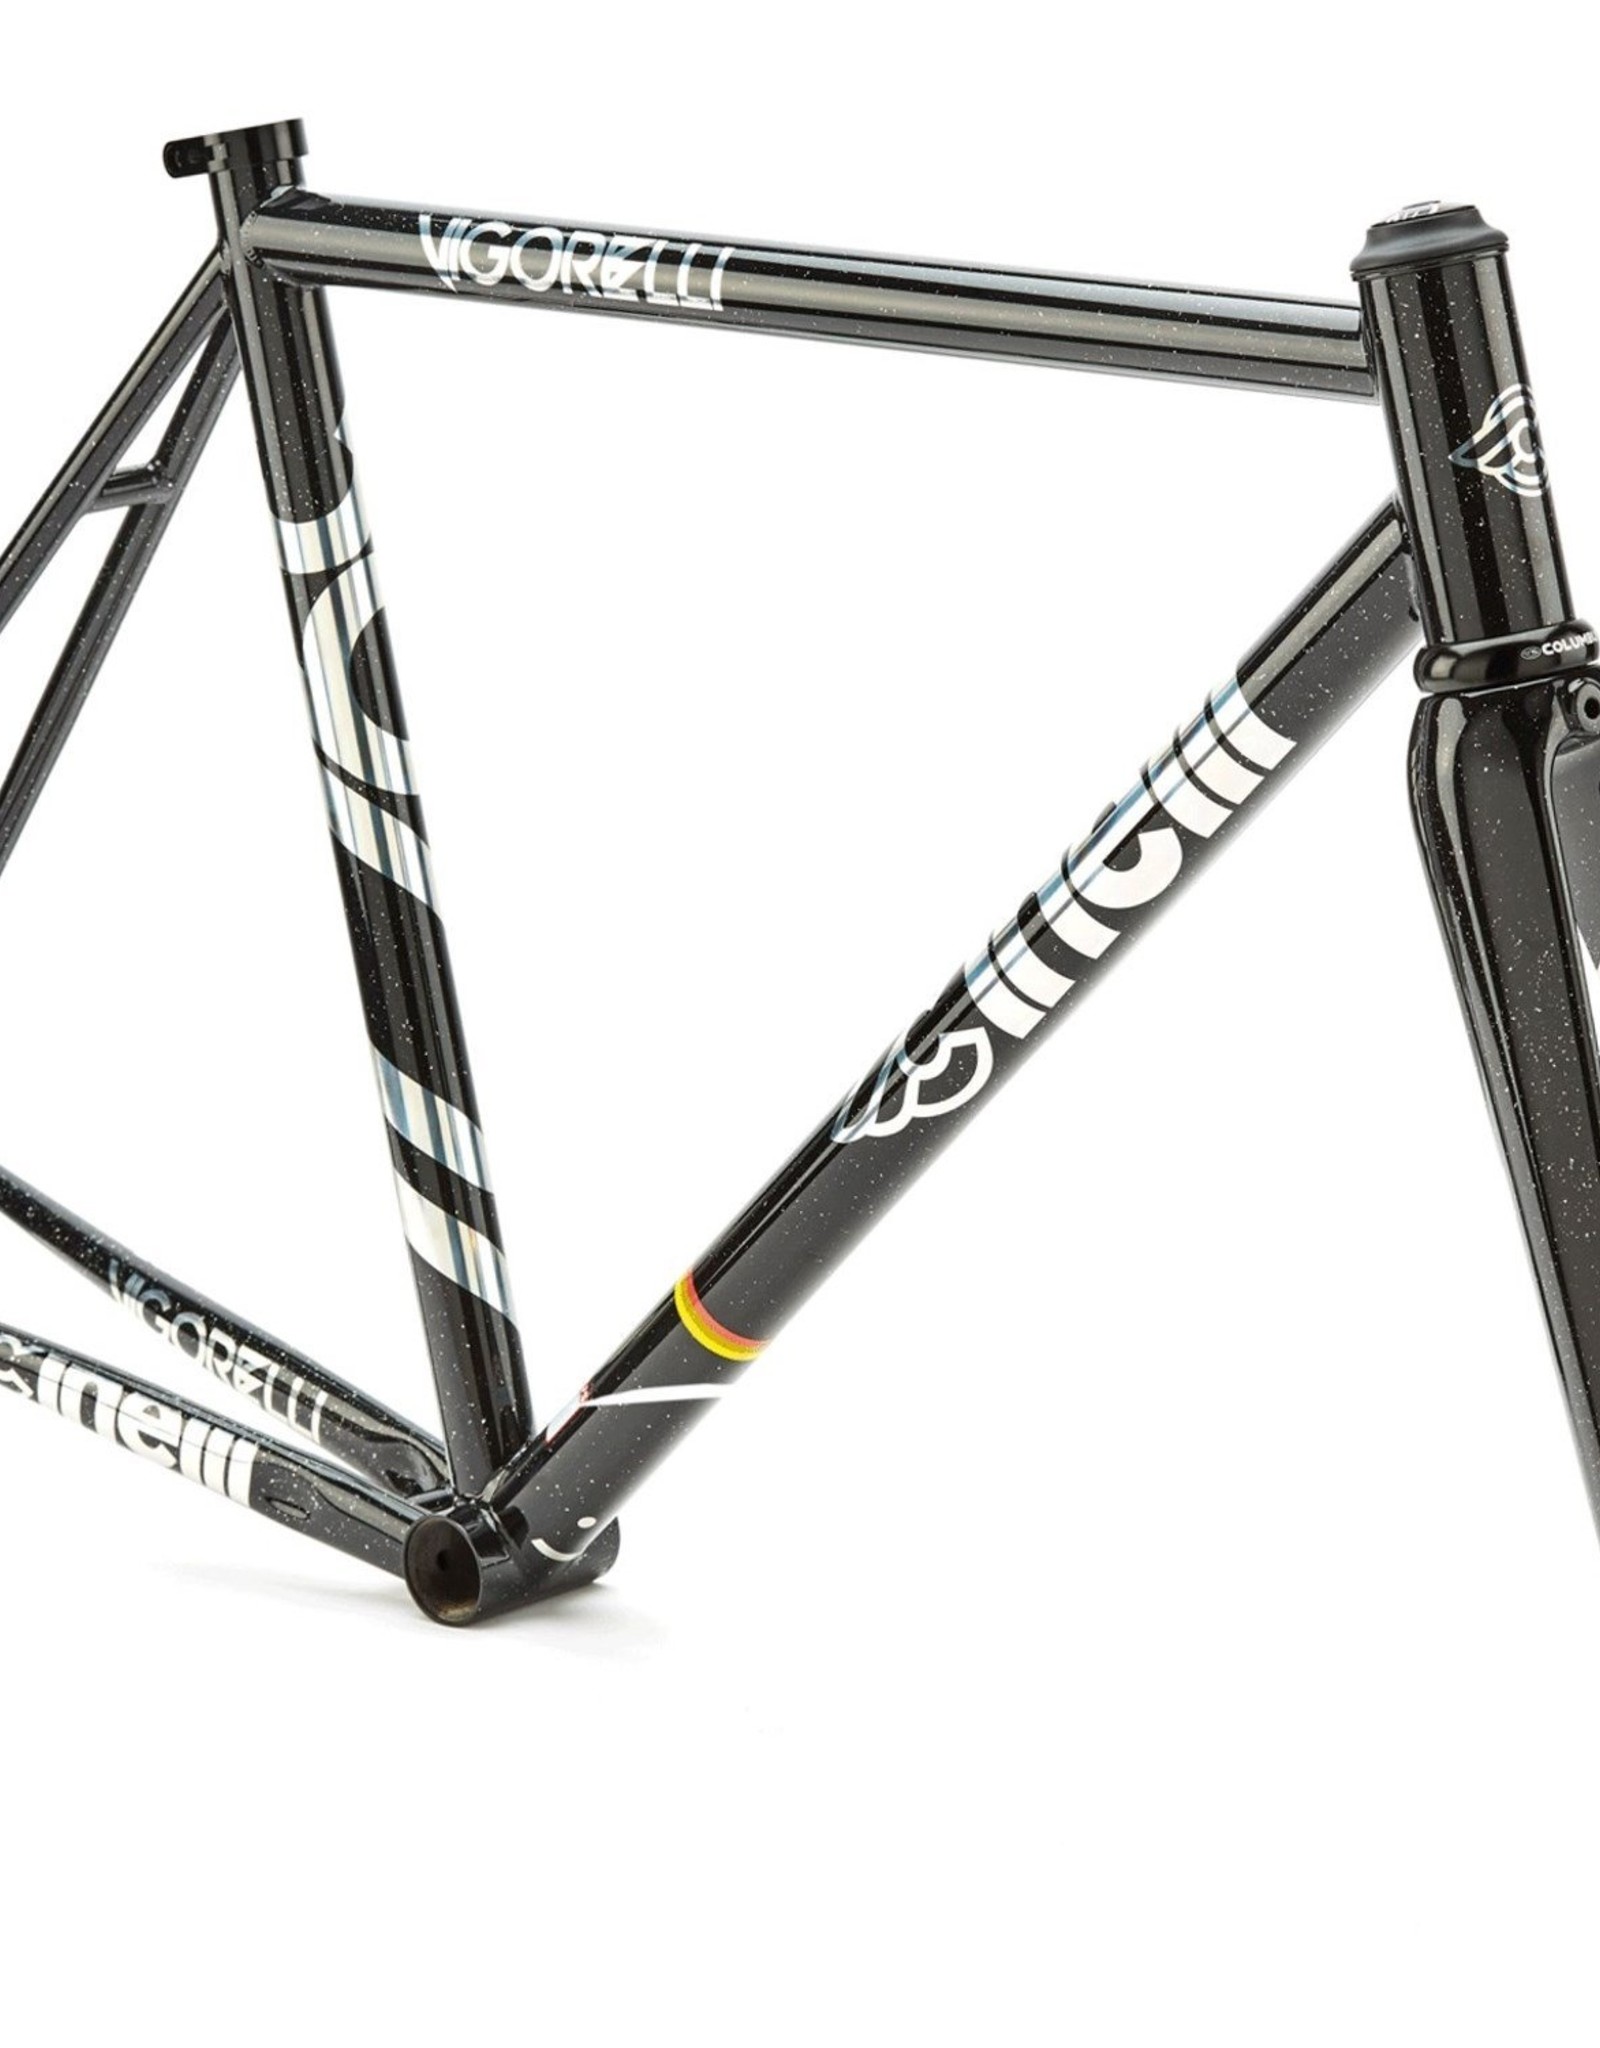 steel track bike frameset